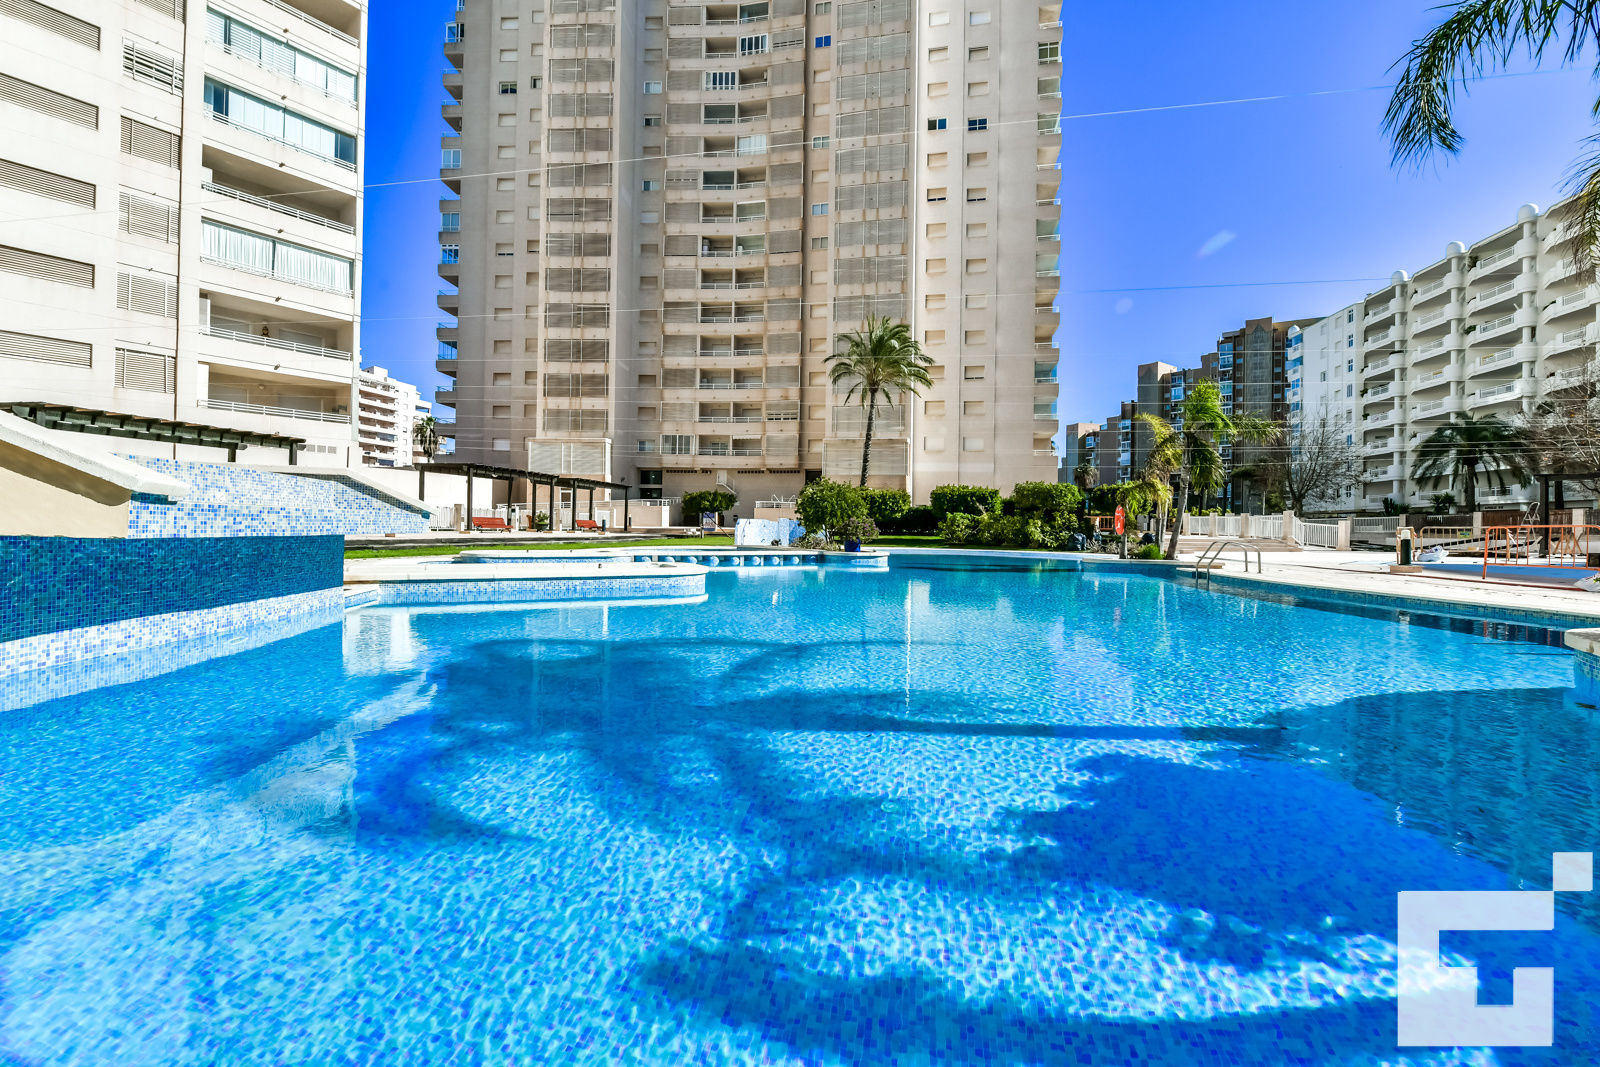 Apartamento apolo xvi 73, Ferienwohnung in Calpe, an der Costa Blanca, Spanien  mit gemeinsamem Pool für 4 Personen...